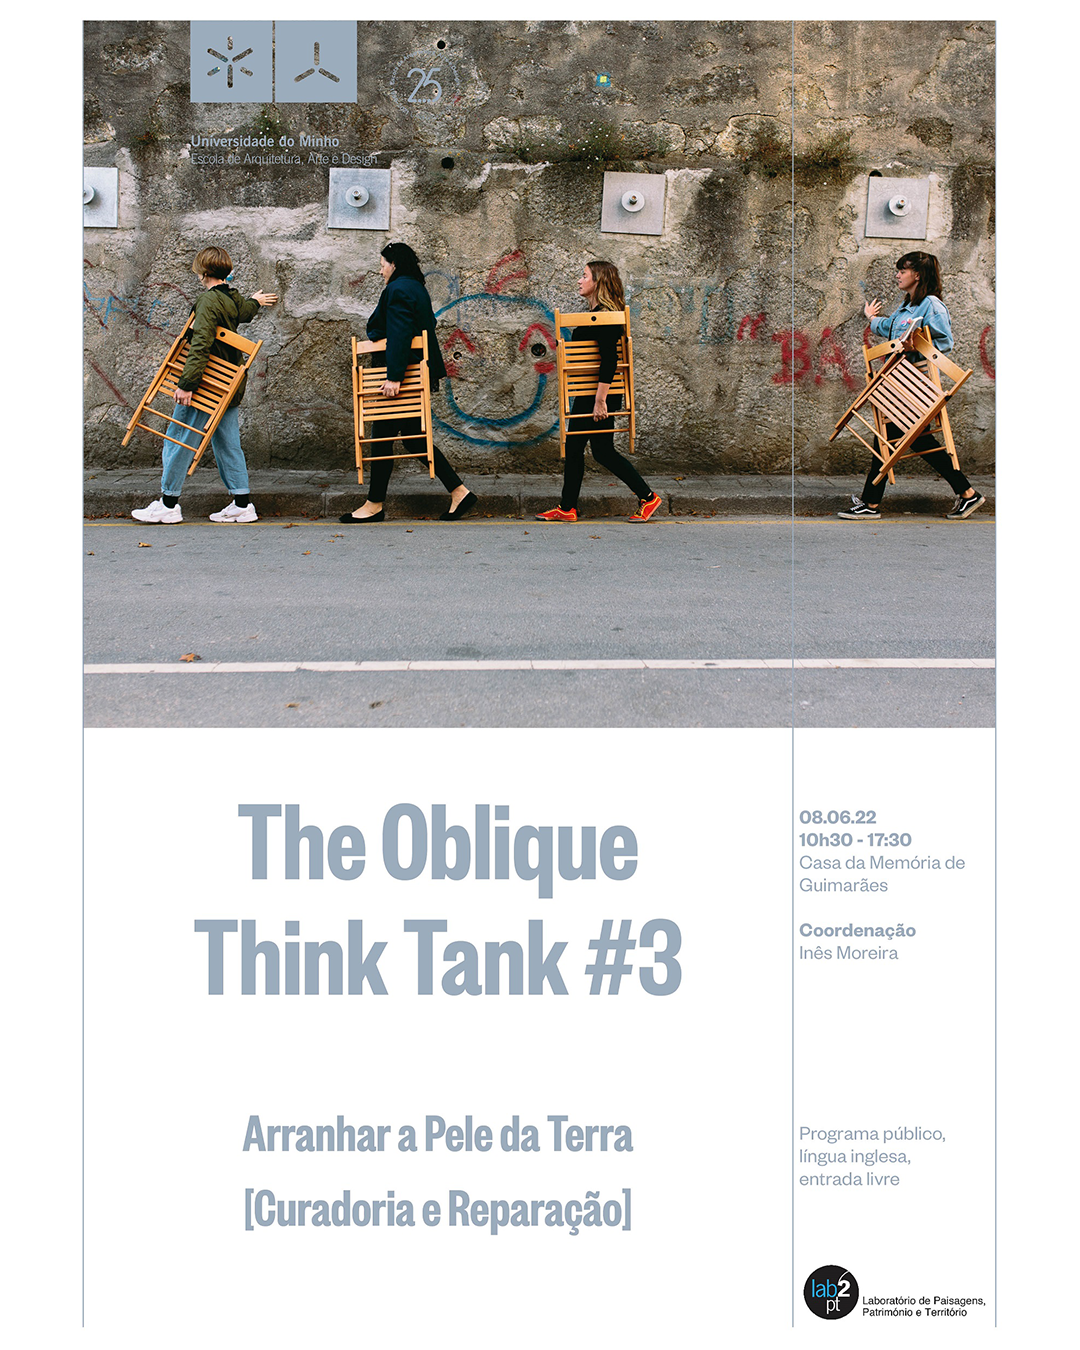 The Oblique Think Tank #3 | Arranhar a Pele da Terra [Curadoria e Reparação] image